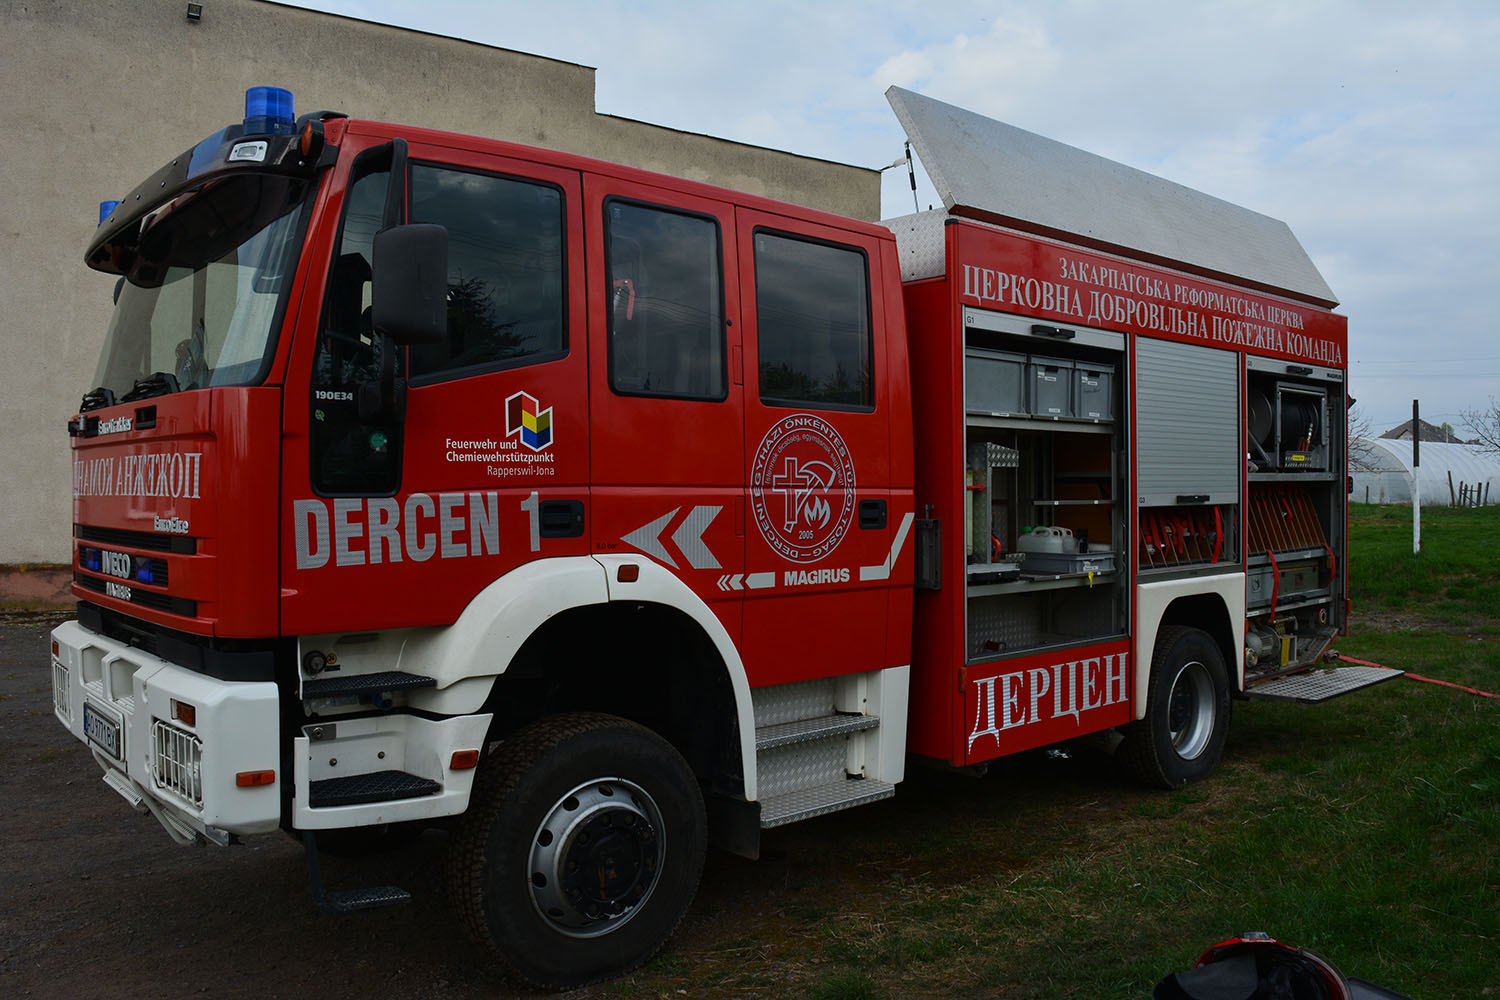 Закарпатські вогнеборці-добровольці Дерцена отримали від швейцарських колег пожежно-рятувальний автомобіль (ФОТО)